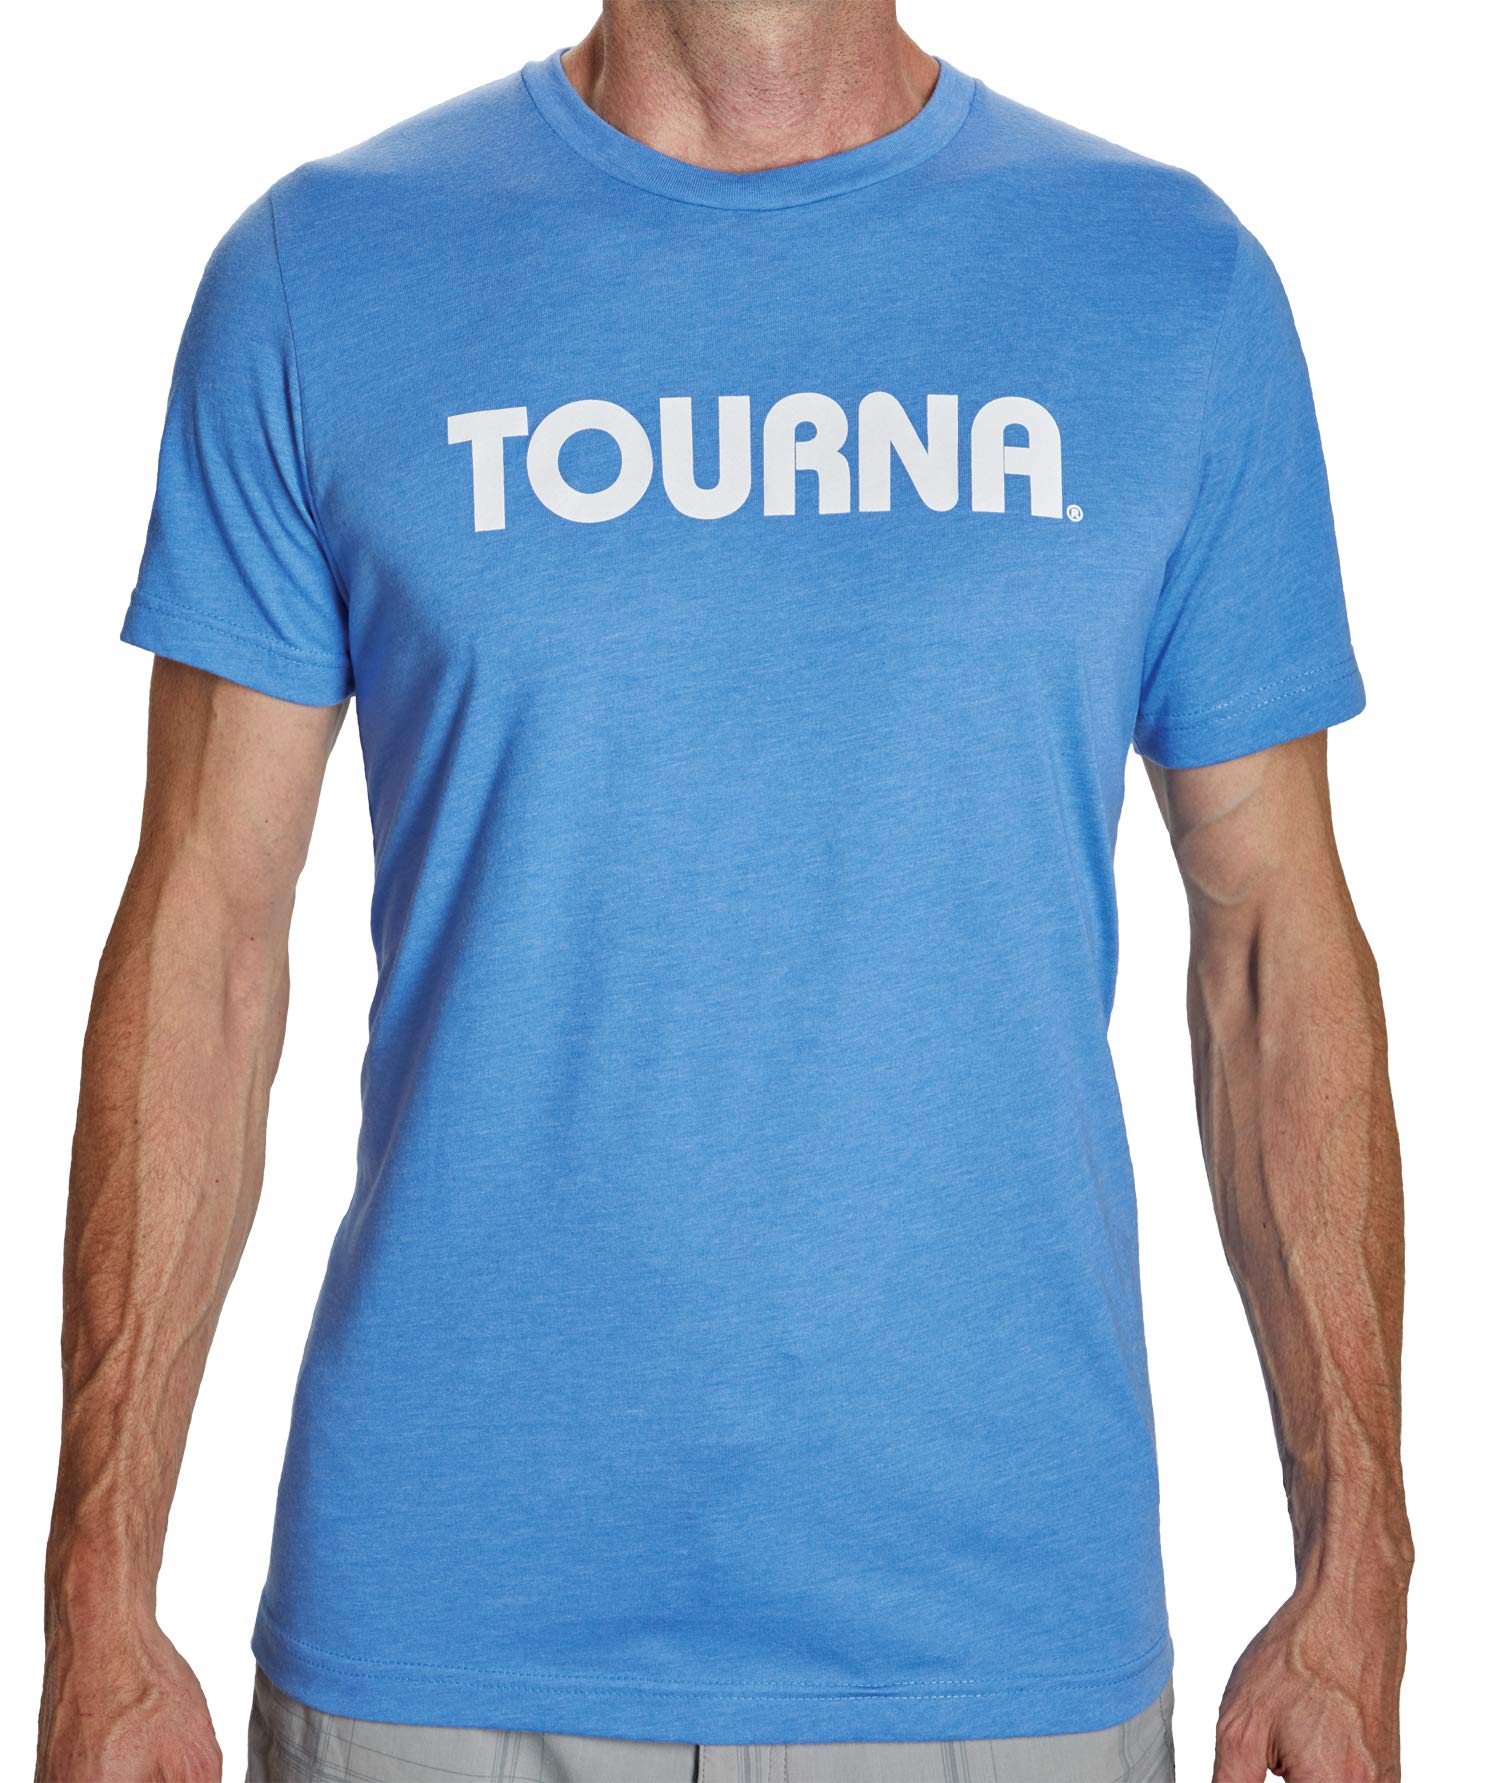 Tourna T-Shirt